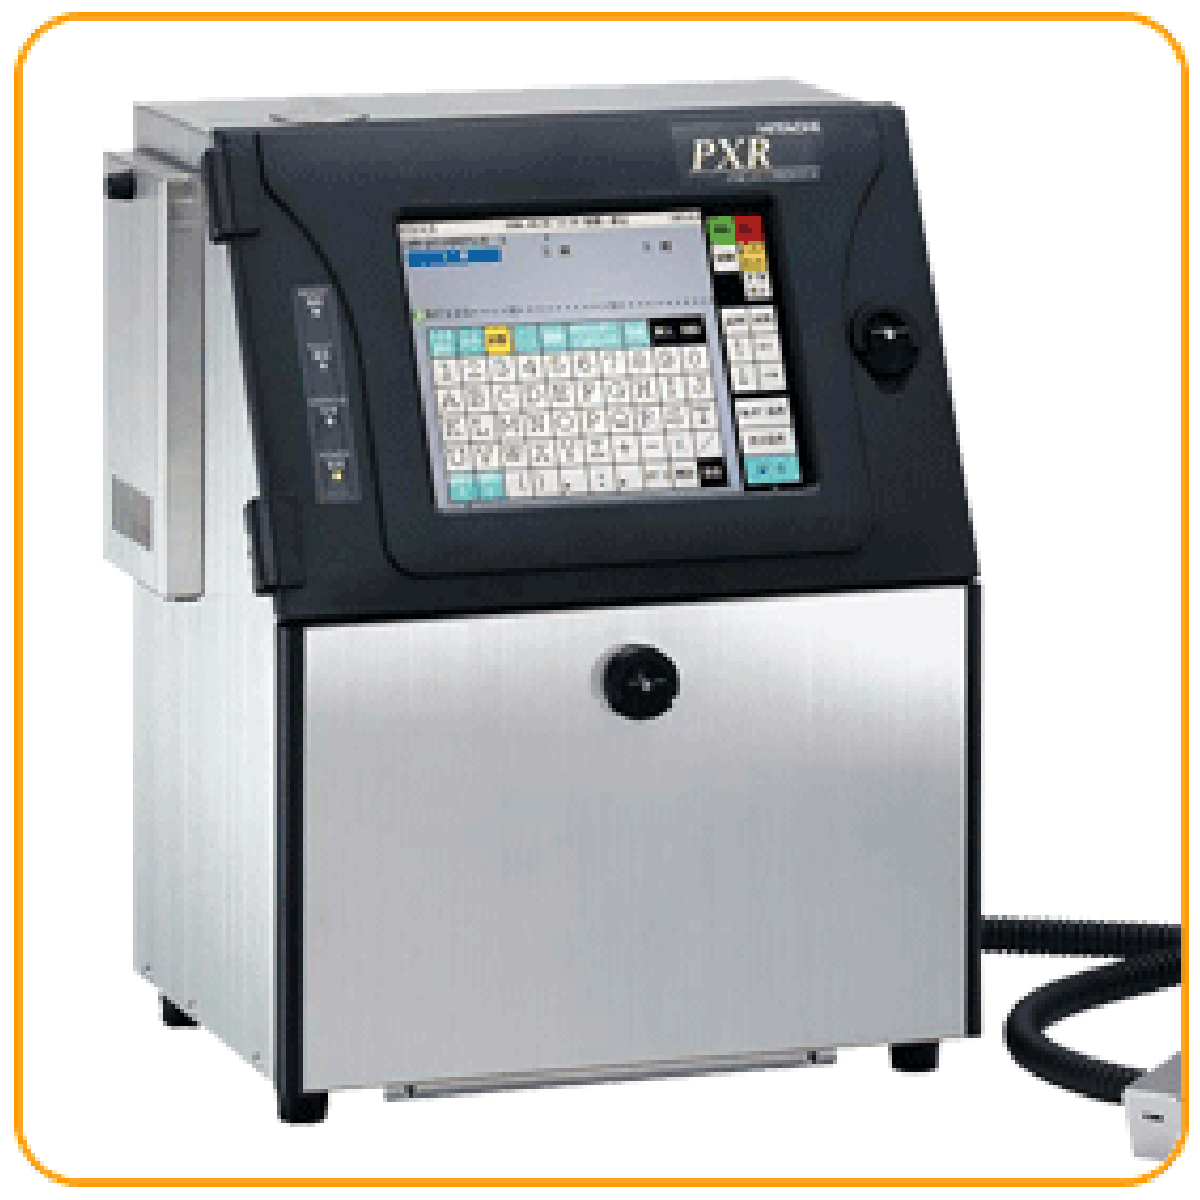 Hitachi PXR_D460W Inkjet Printer